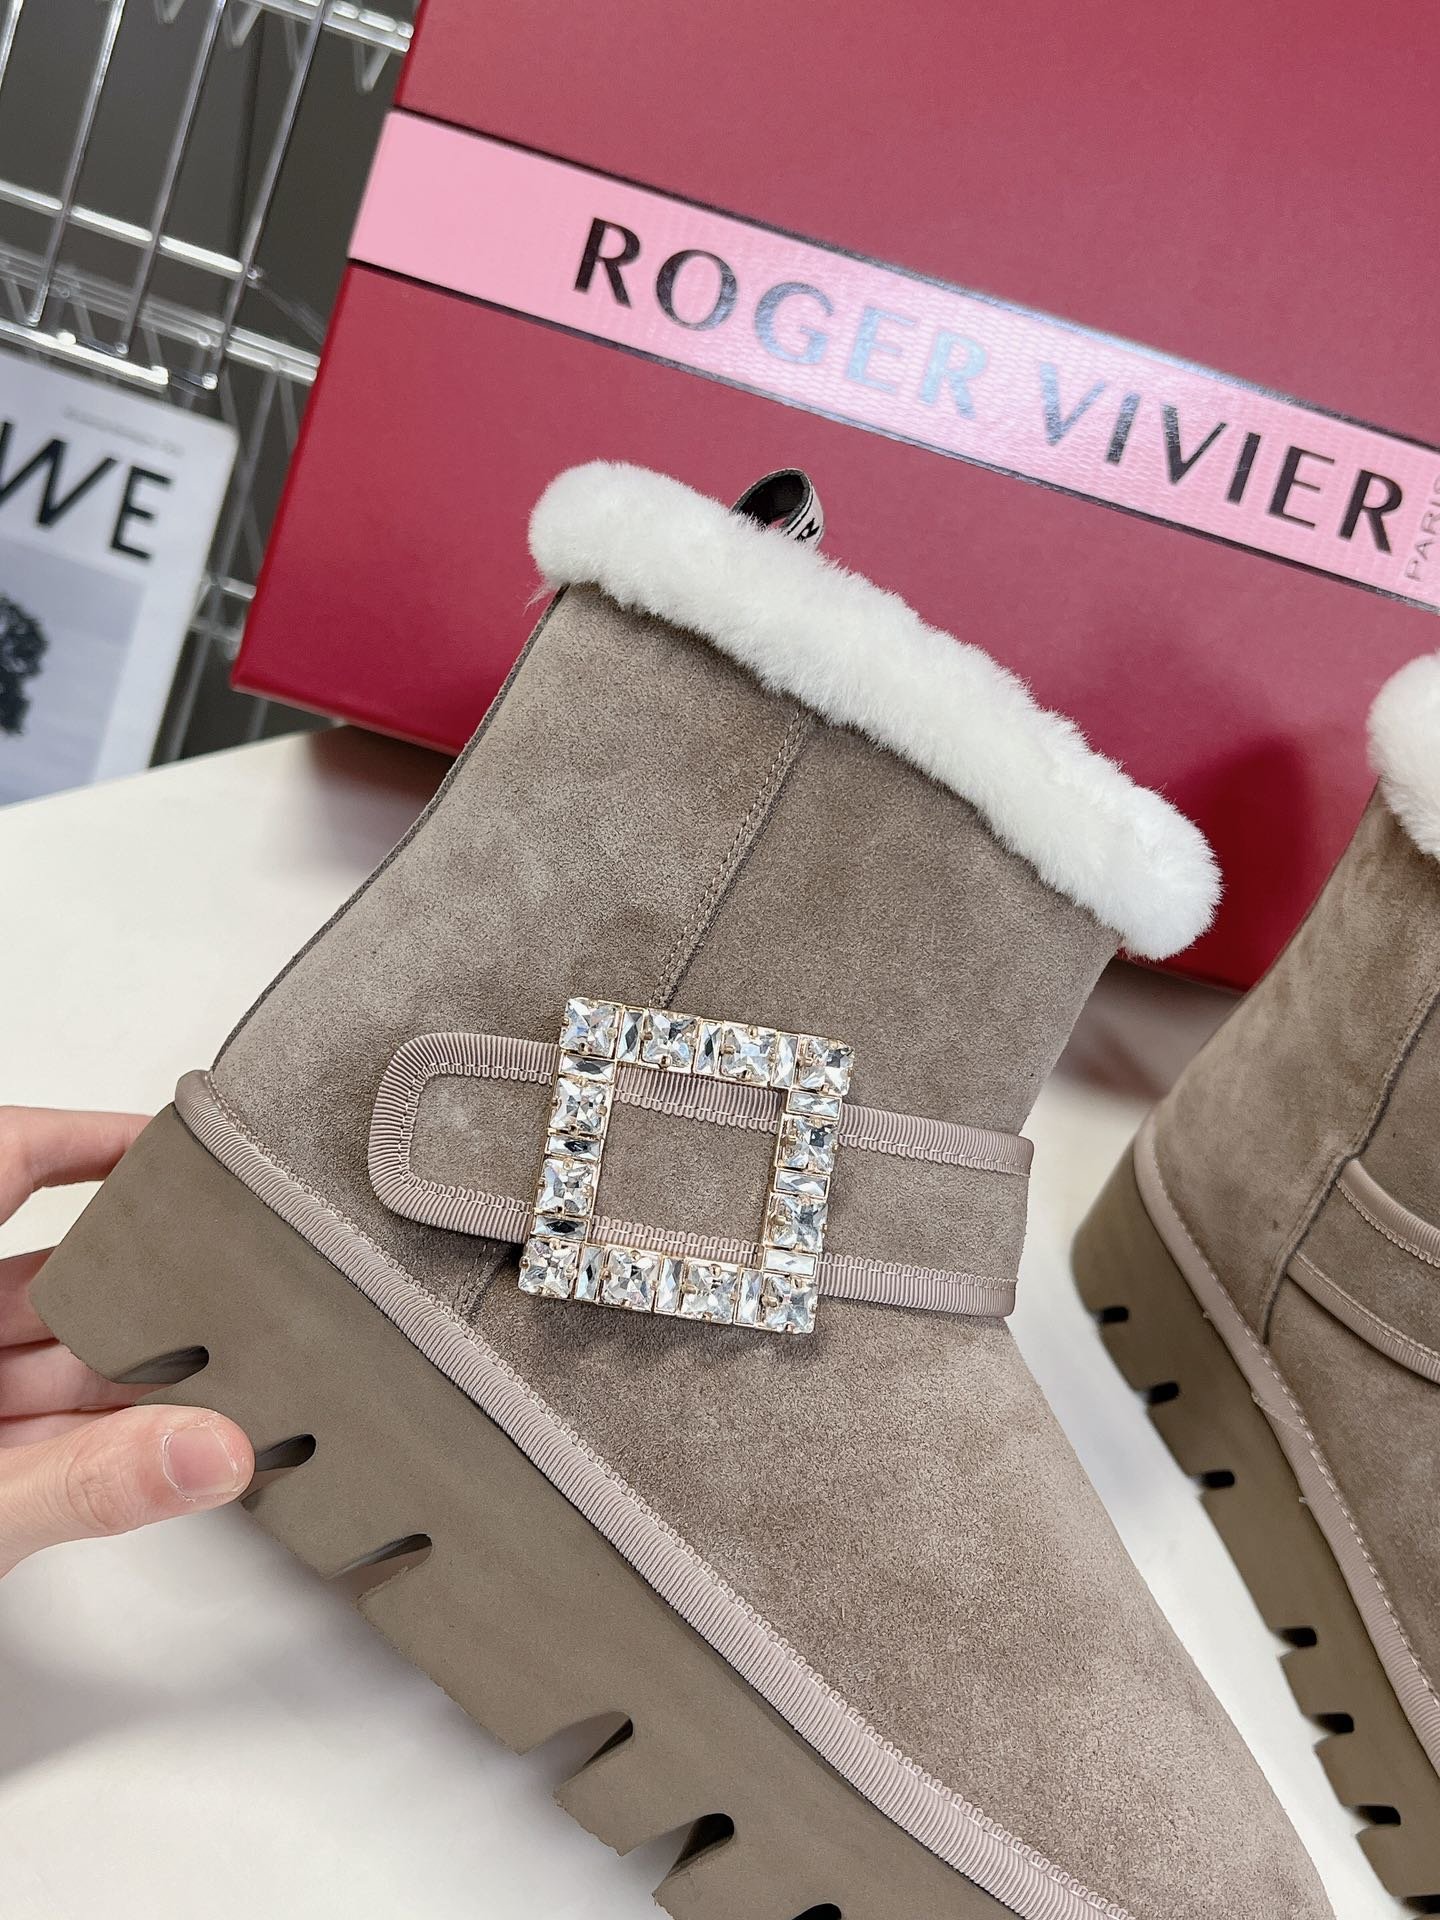 RogerVivier秒杀市场版本今年最美的雪地靴！太懂女人心思了侧钻扣的细节十分精致水晶方扣饰扣羊毛边